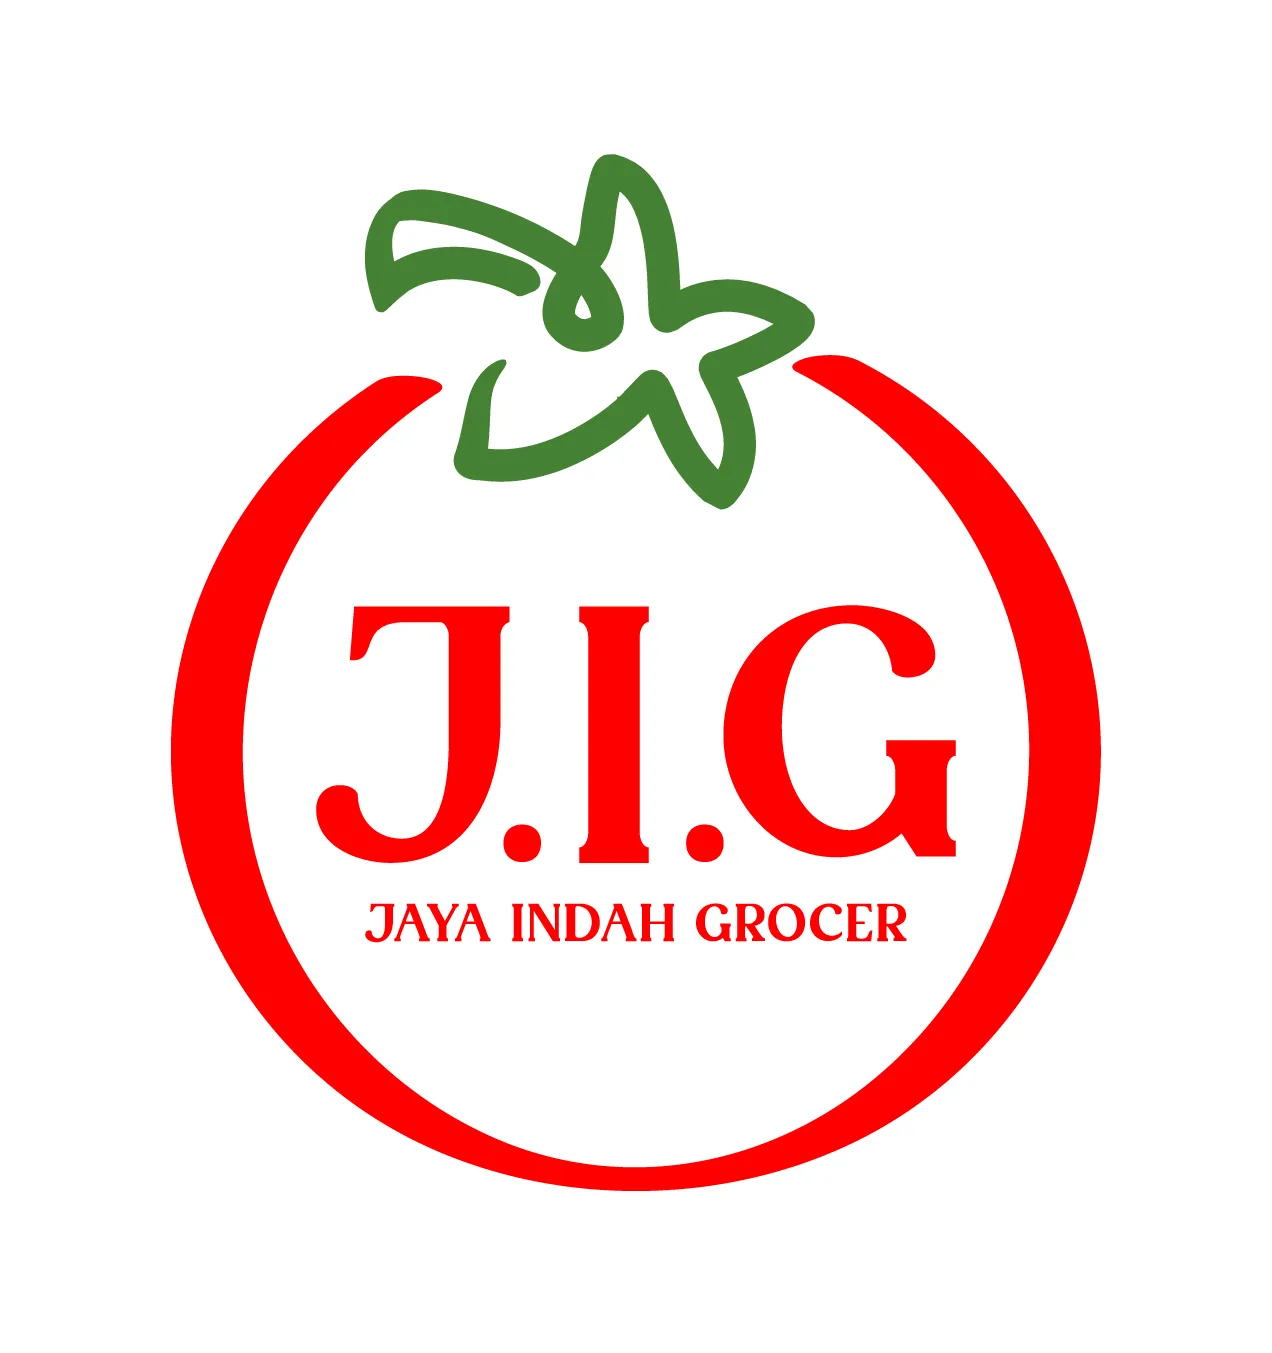 Jaya Indah Grocer